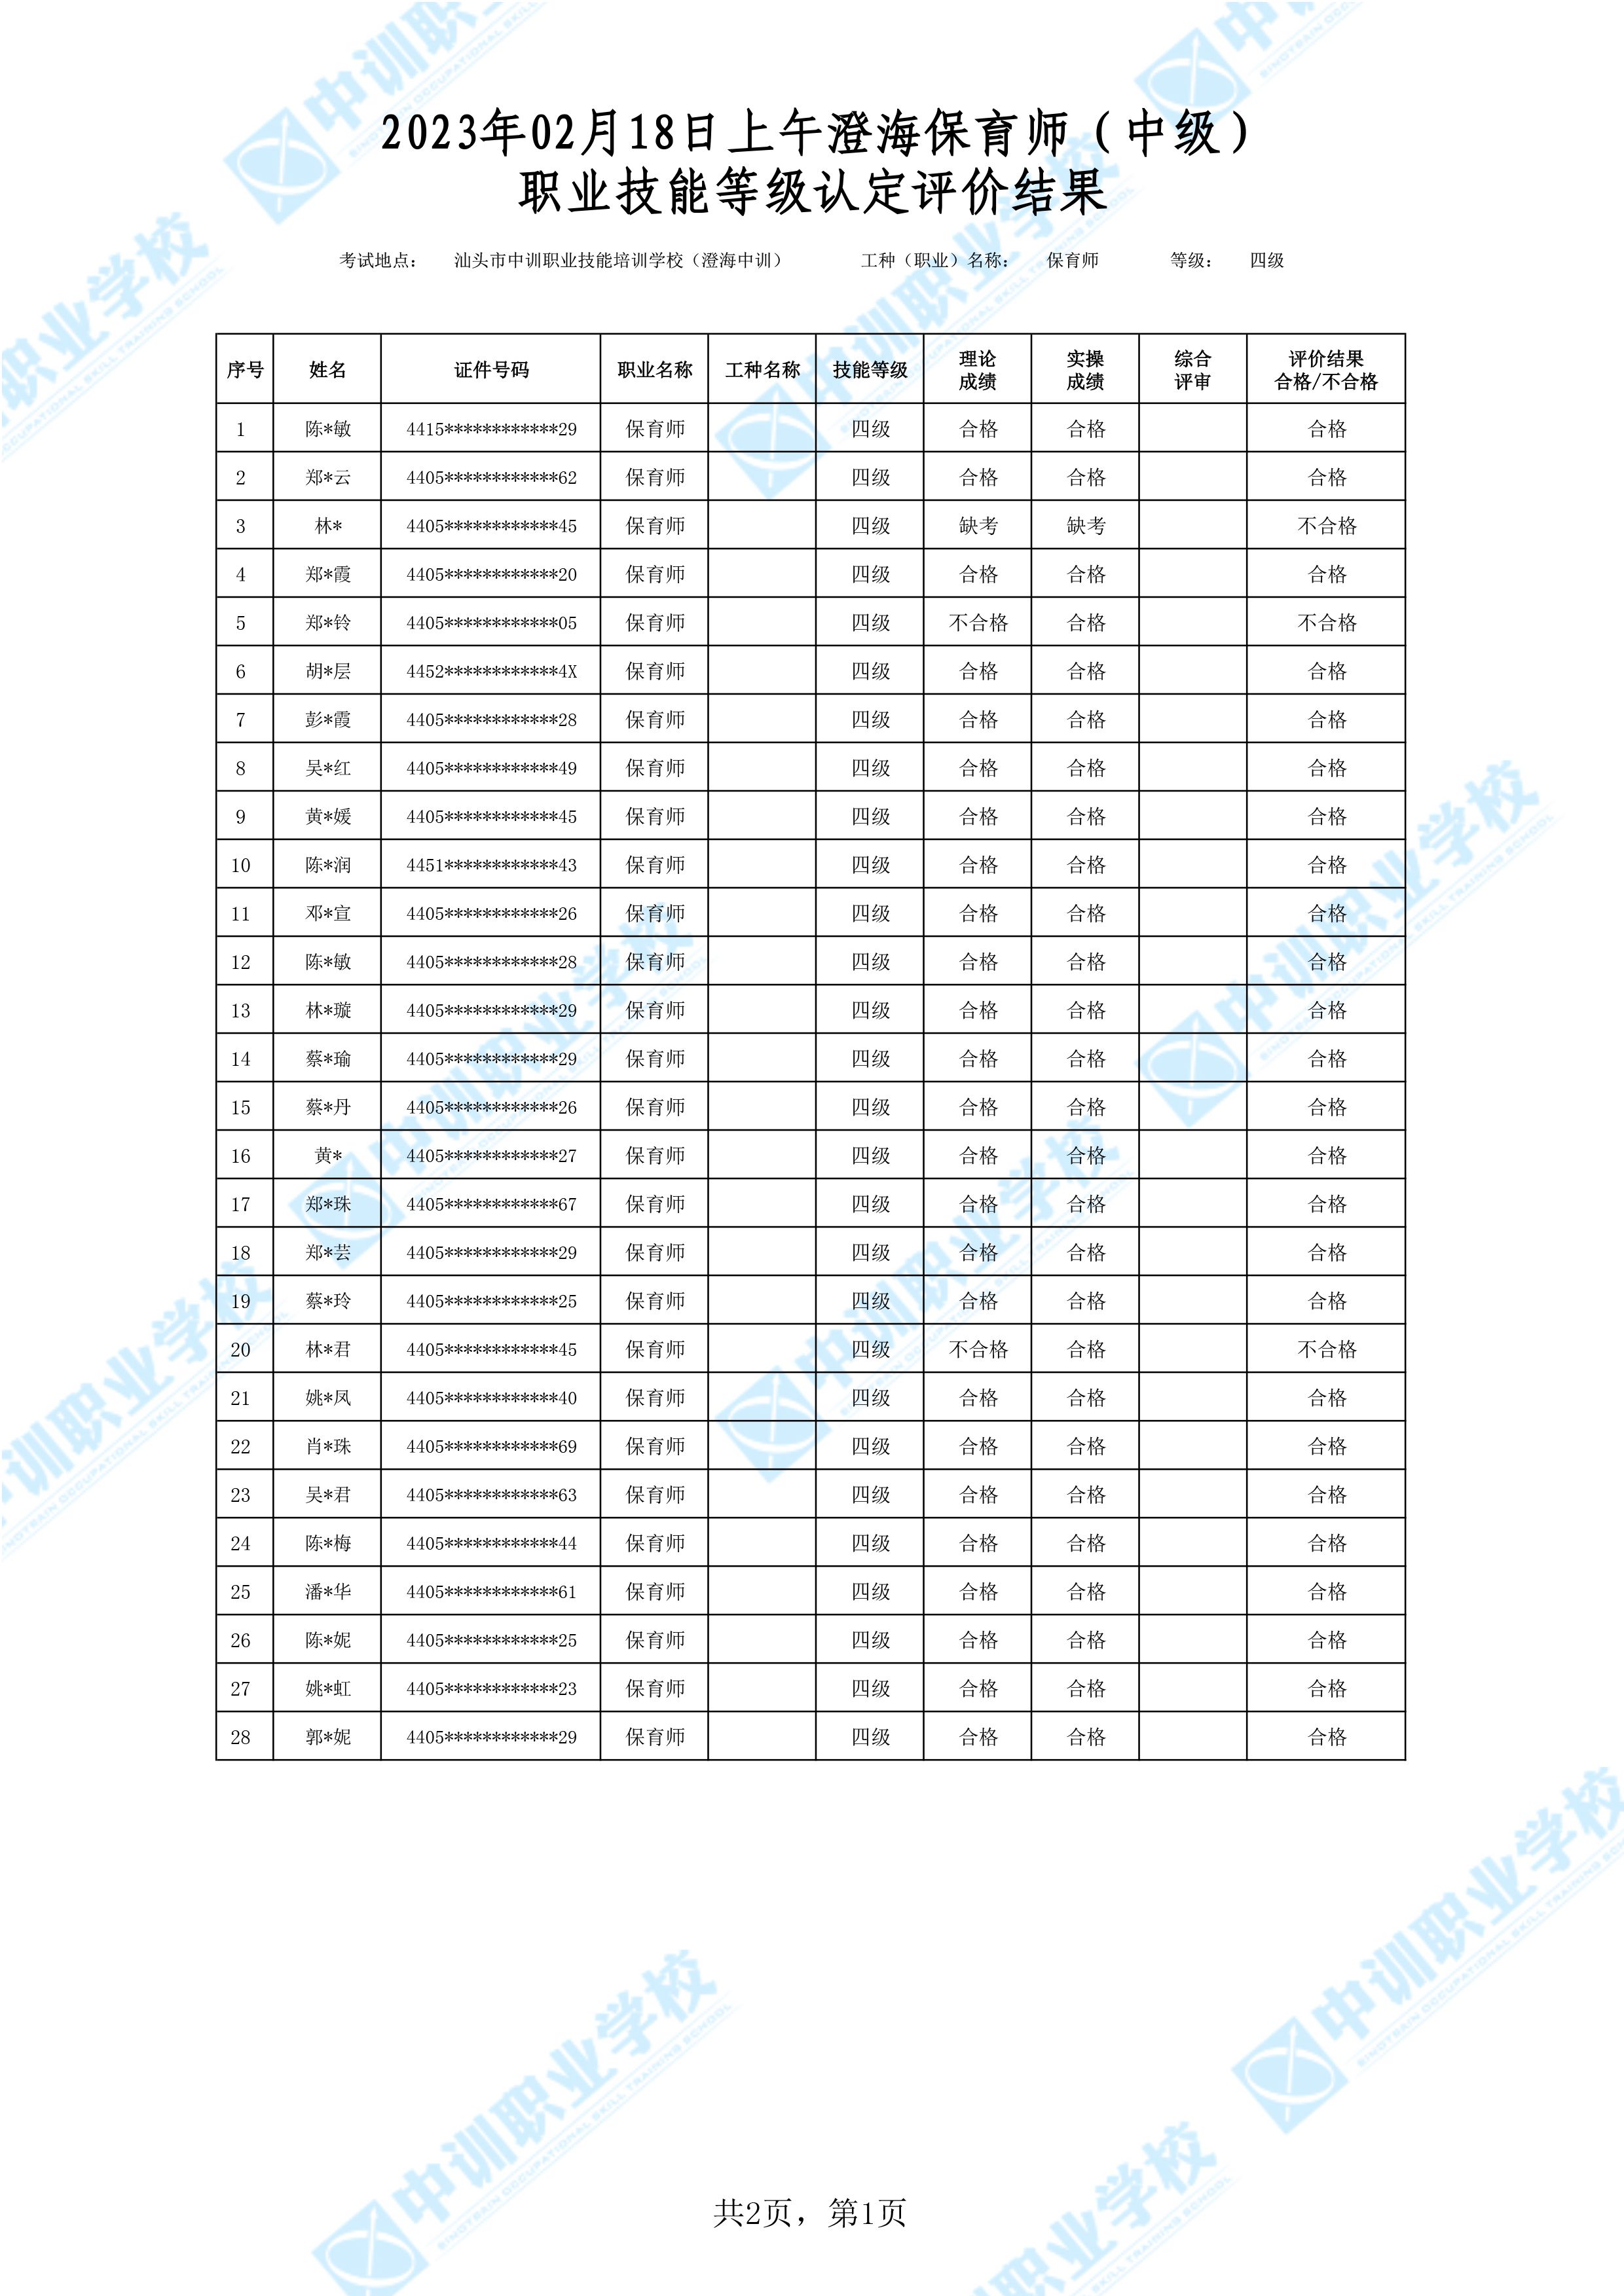 2023-02-18日上午澄海中级保育师考试鉴定名册表-1 副本.jpg